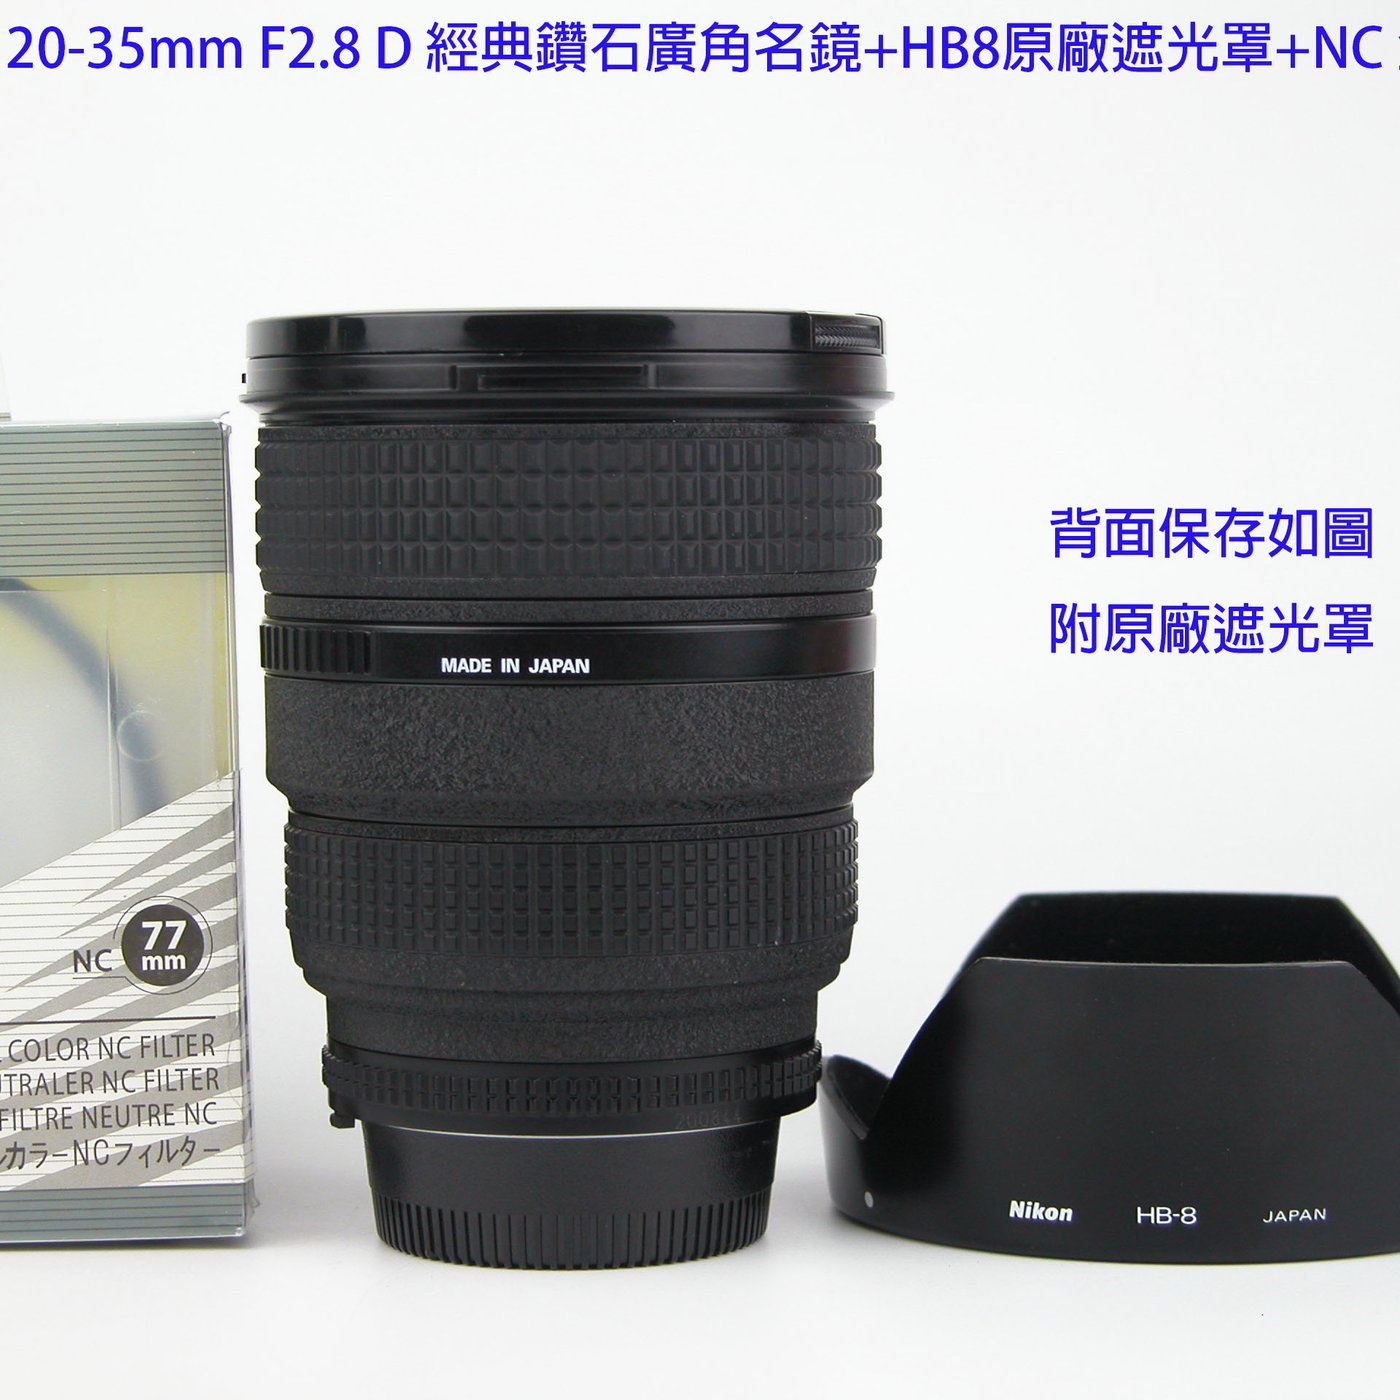 Nikon AF 20-35mm F2.8 D 經典鑽石廣角名鏡+HB8原廠遮光罩+NC